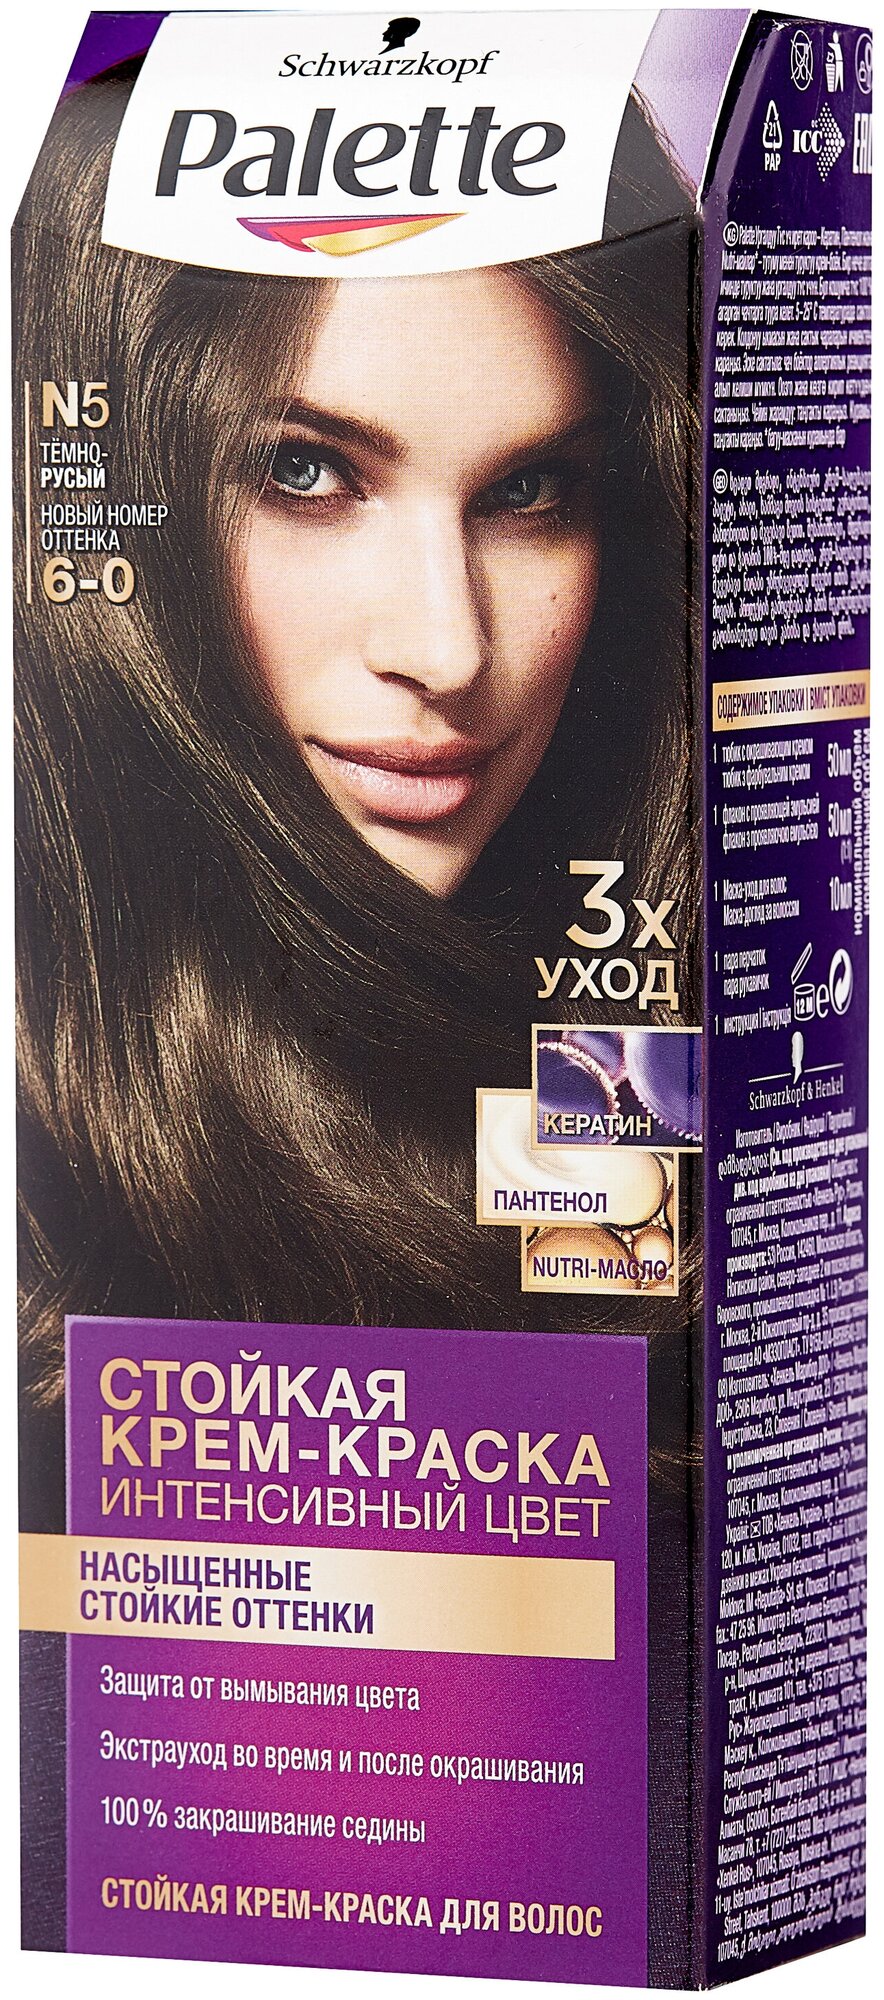 Palette Интенсивный цвет Стойкая крем-краска для волос, N5 6-0 Тёмно-русый